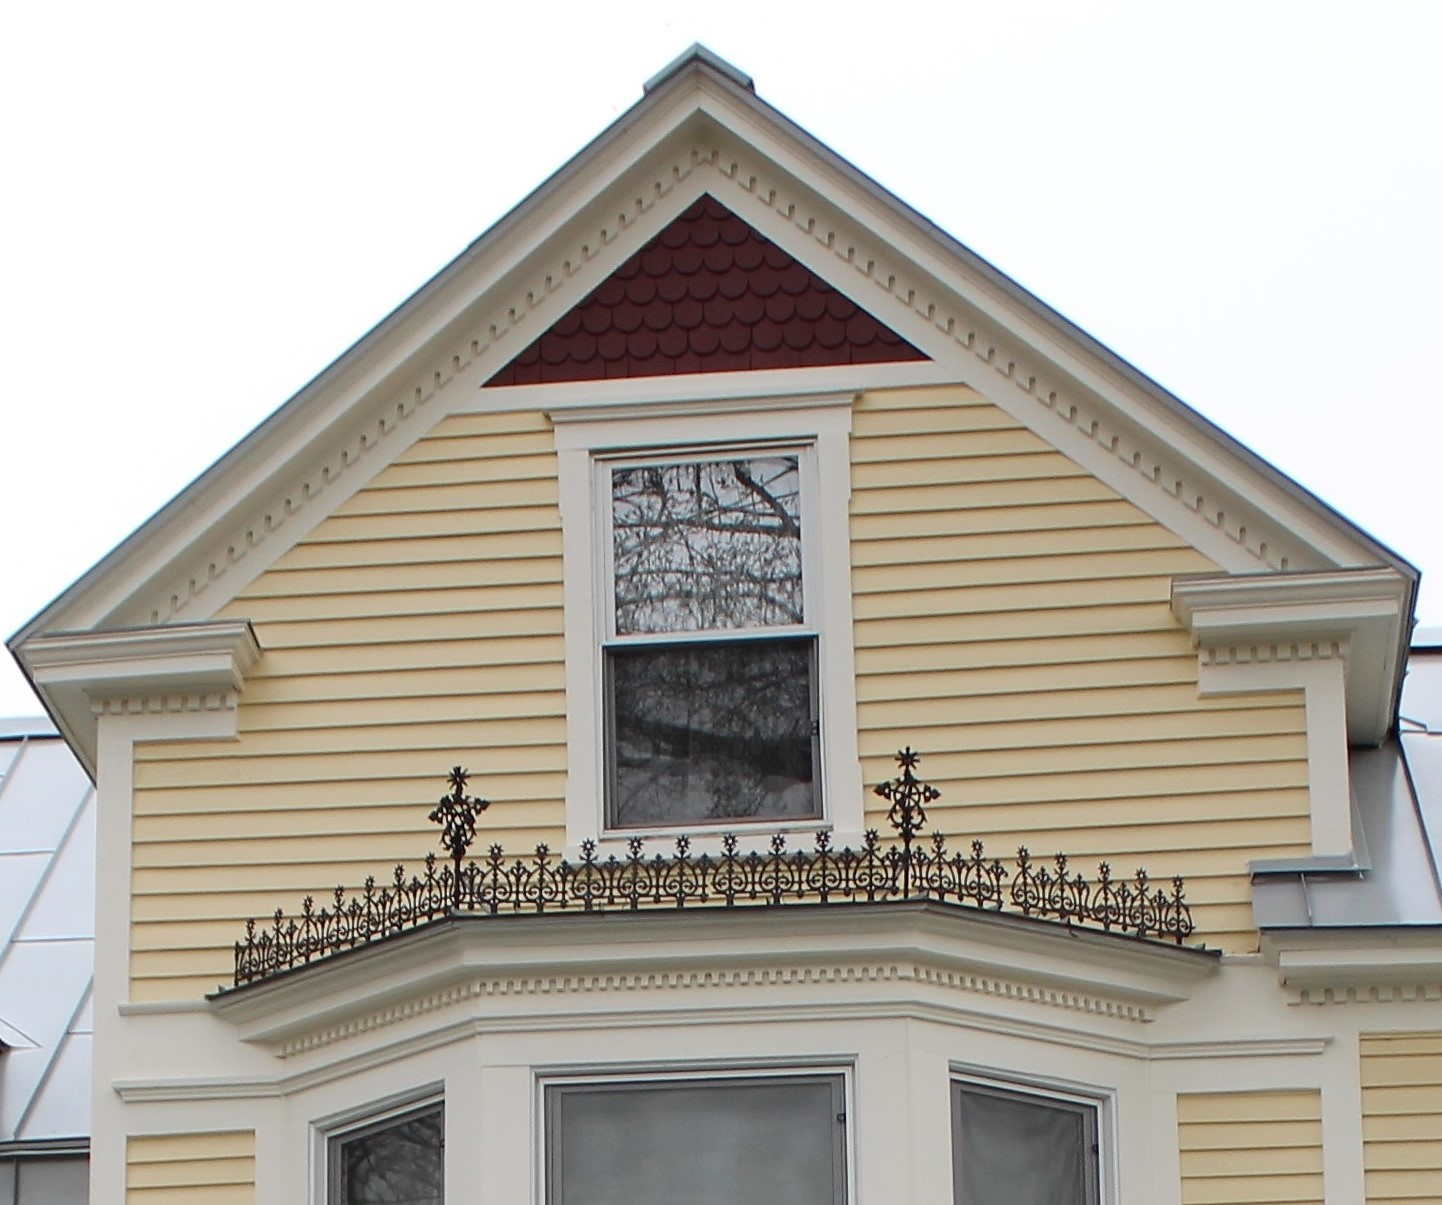 3. La dentelle ornementale en fonte remise en évidence sur le toit de la fenêtre en baie.